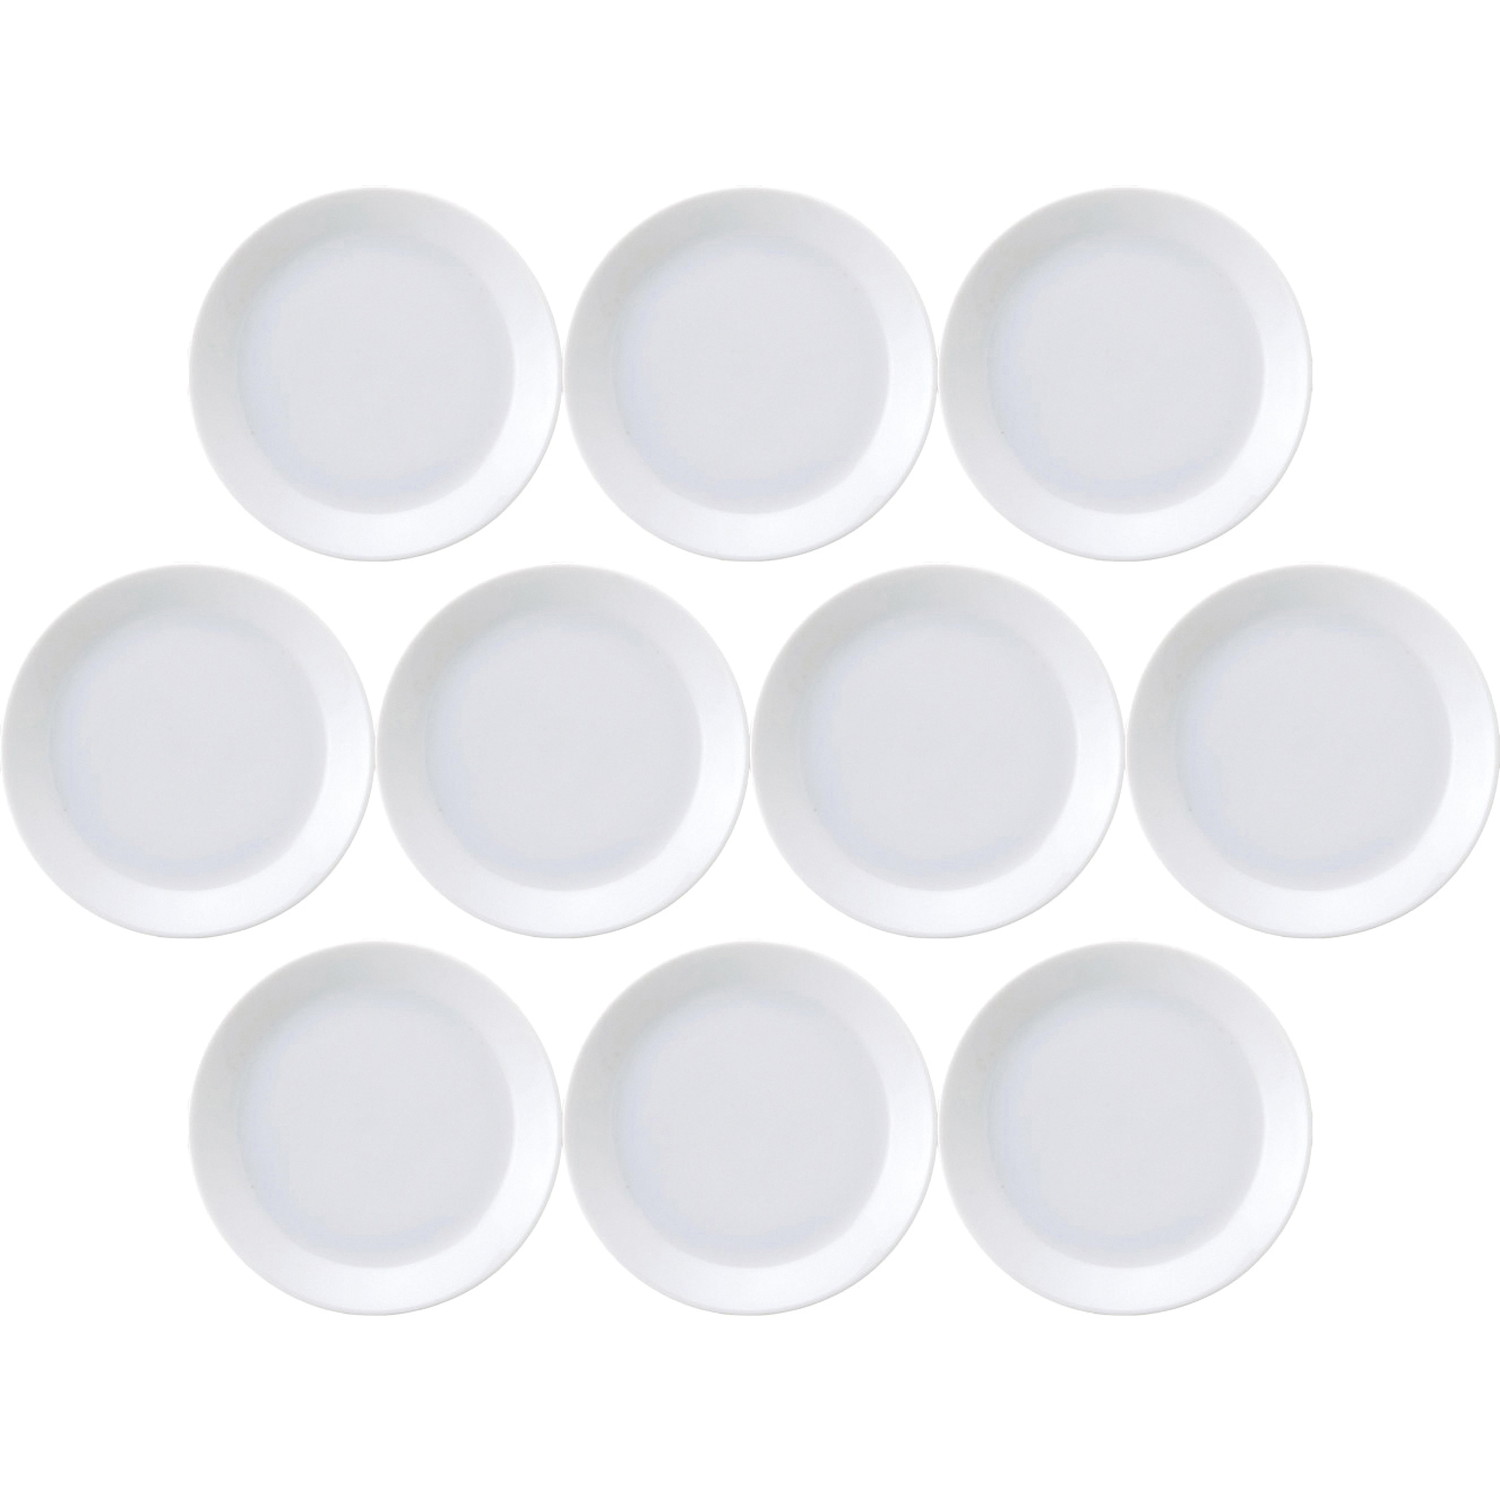 10個セット ナポリ 17cm皿 [16.6×2.3cm] | 洋食器 洋皿 ナポリ 超白磁 パンプレート